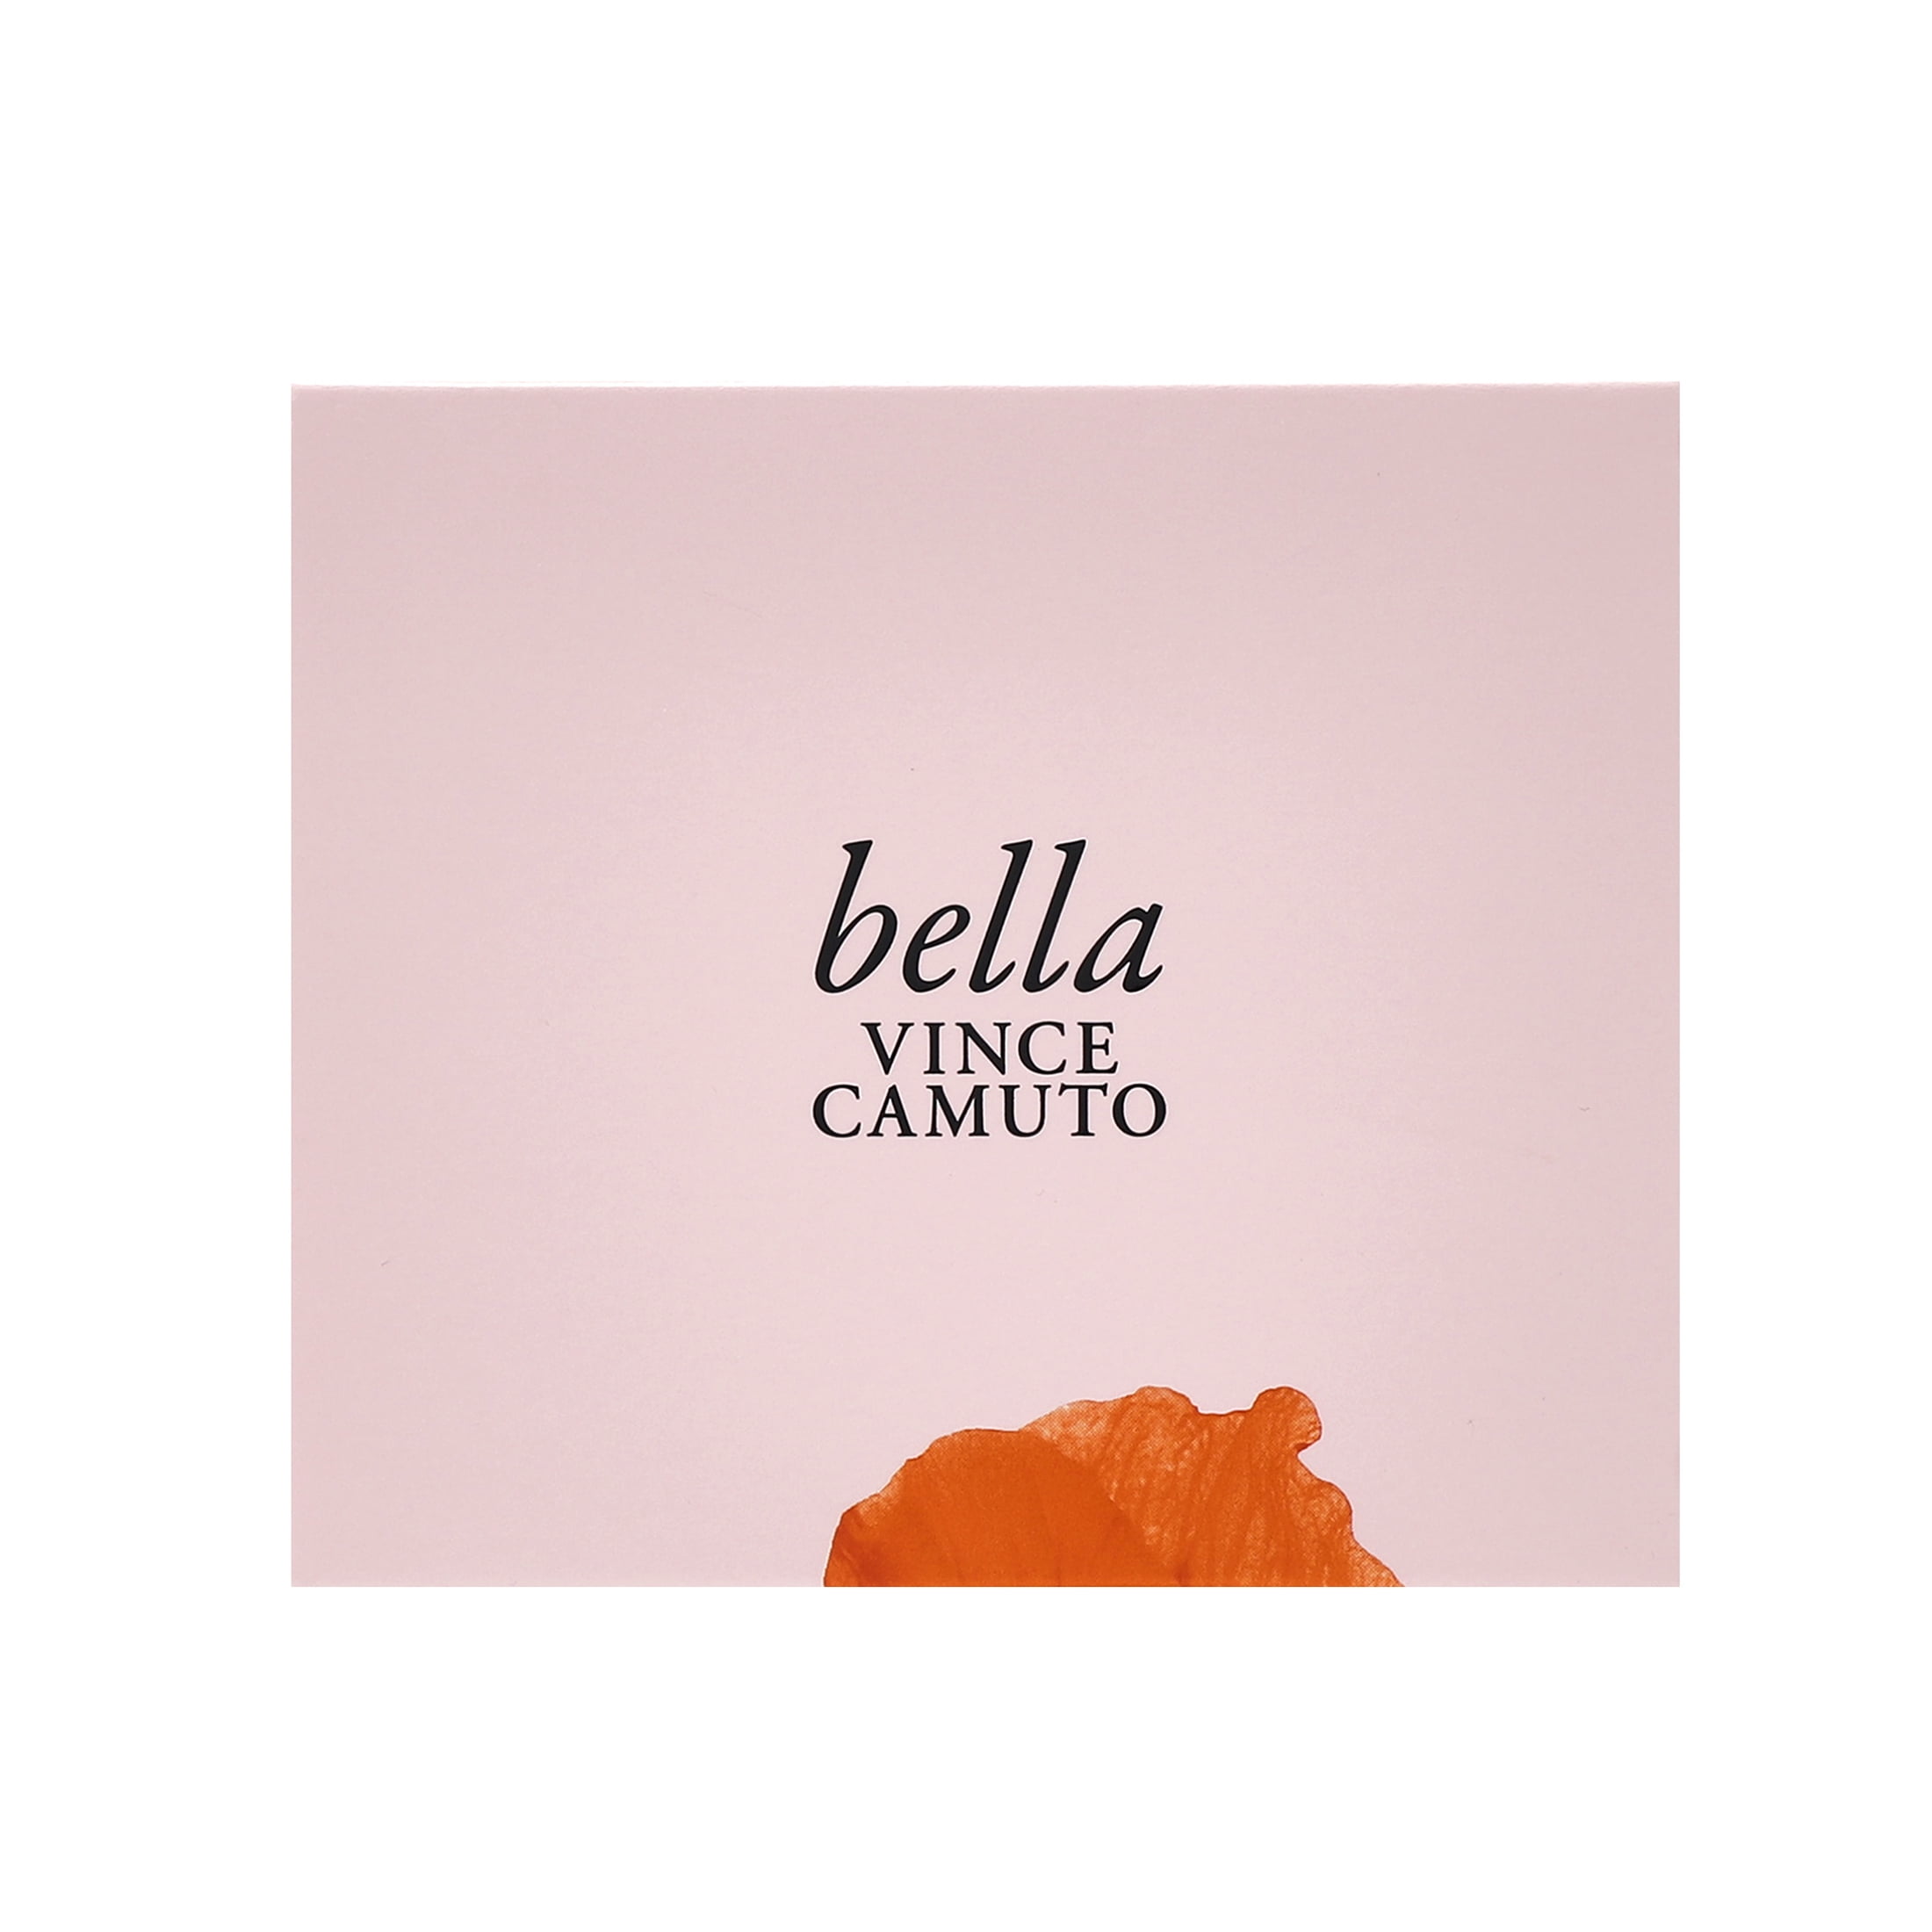 1-Oz Vince Camuto Perfumes (Bella, Amore, Divina, Fiore, Ciao